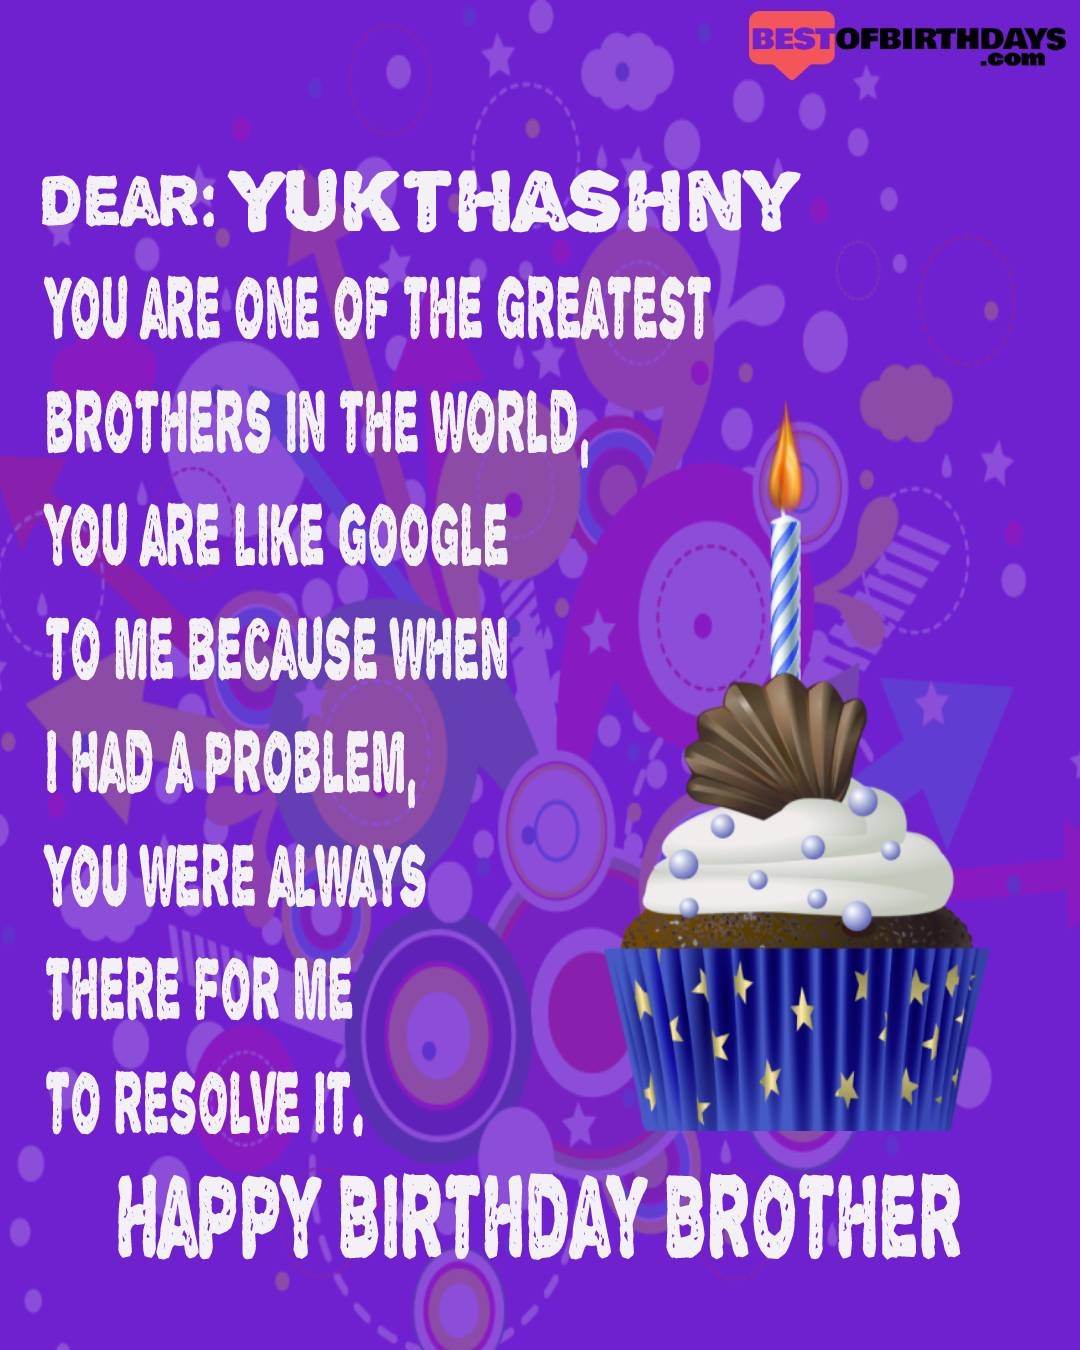 Happy birthday yukthashny bhai brother bro